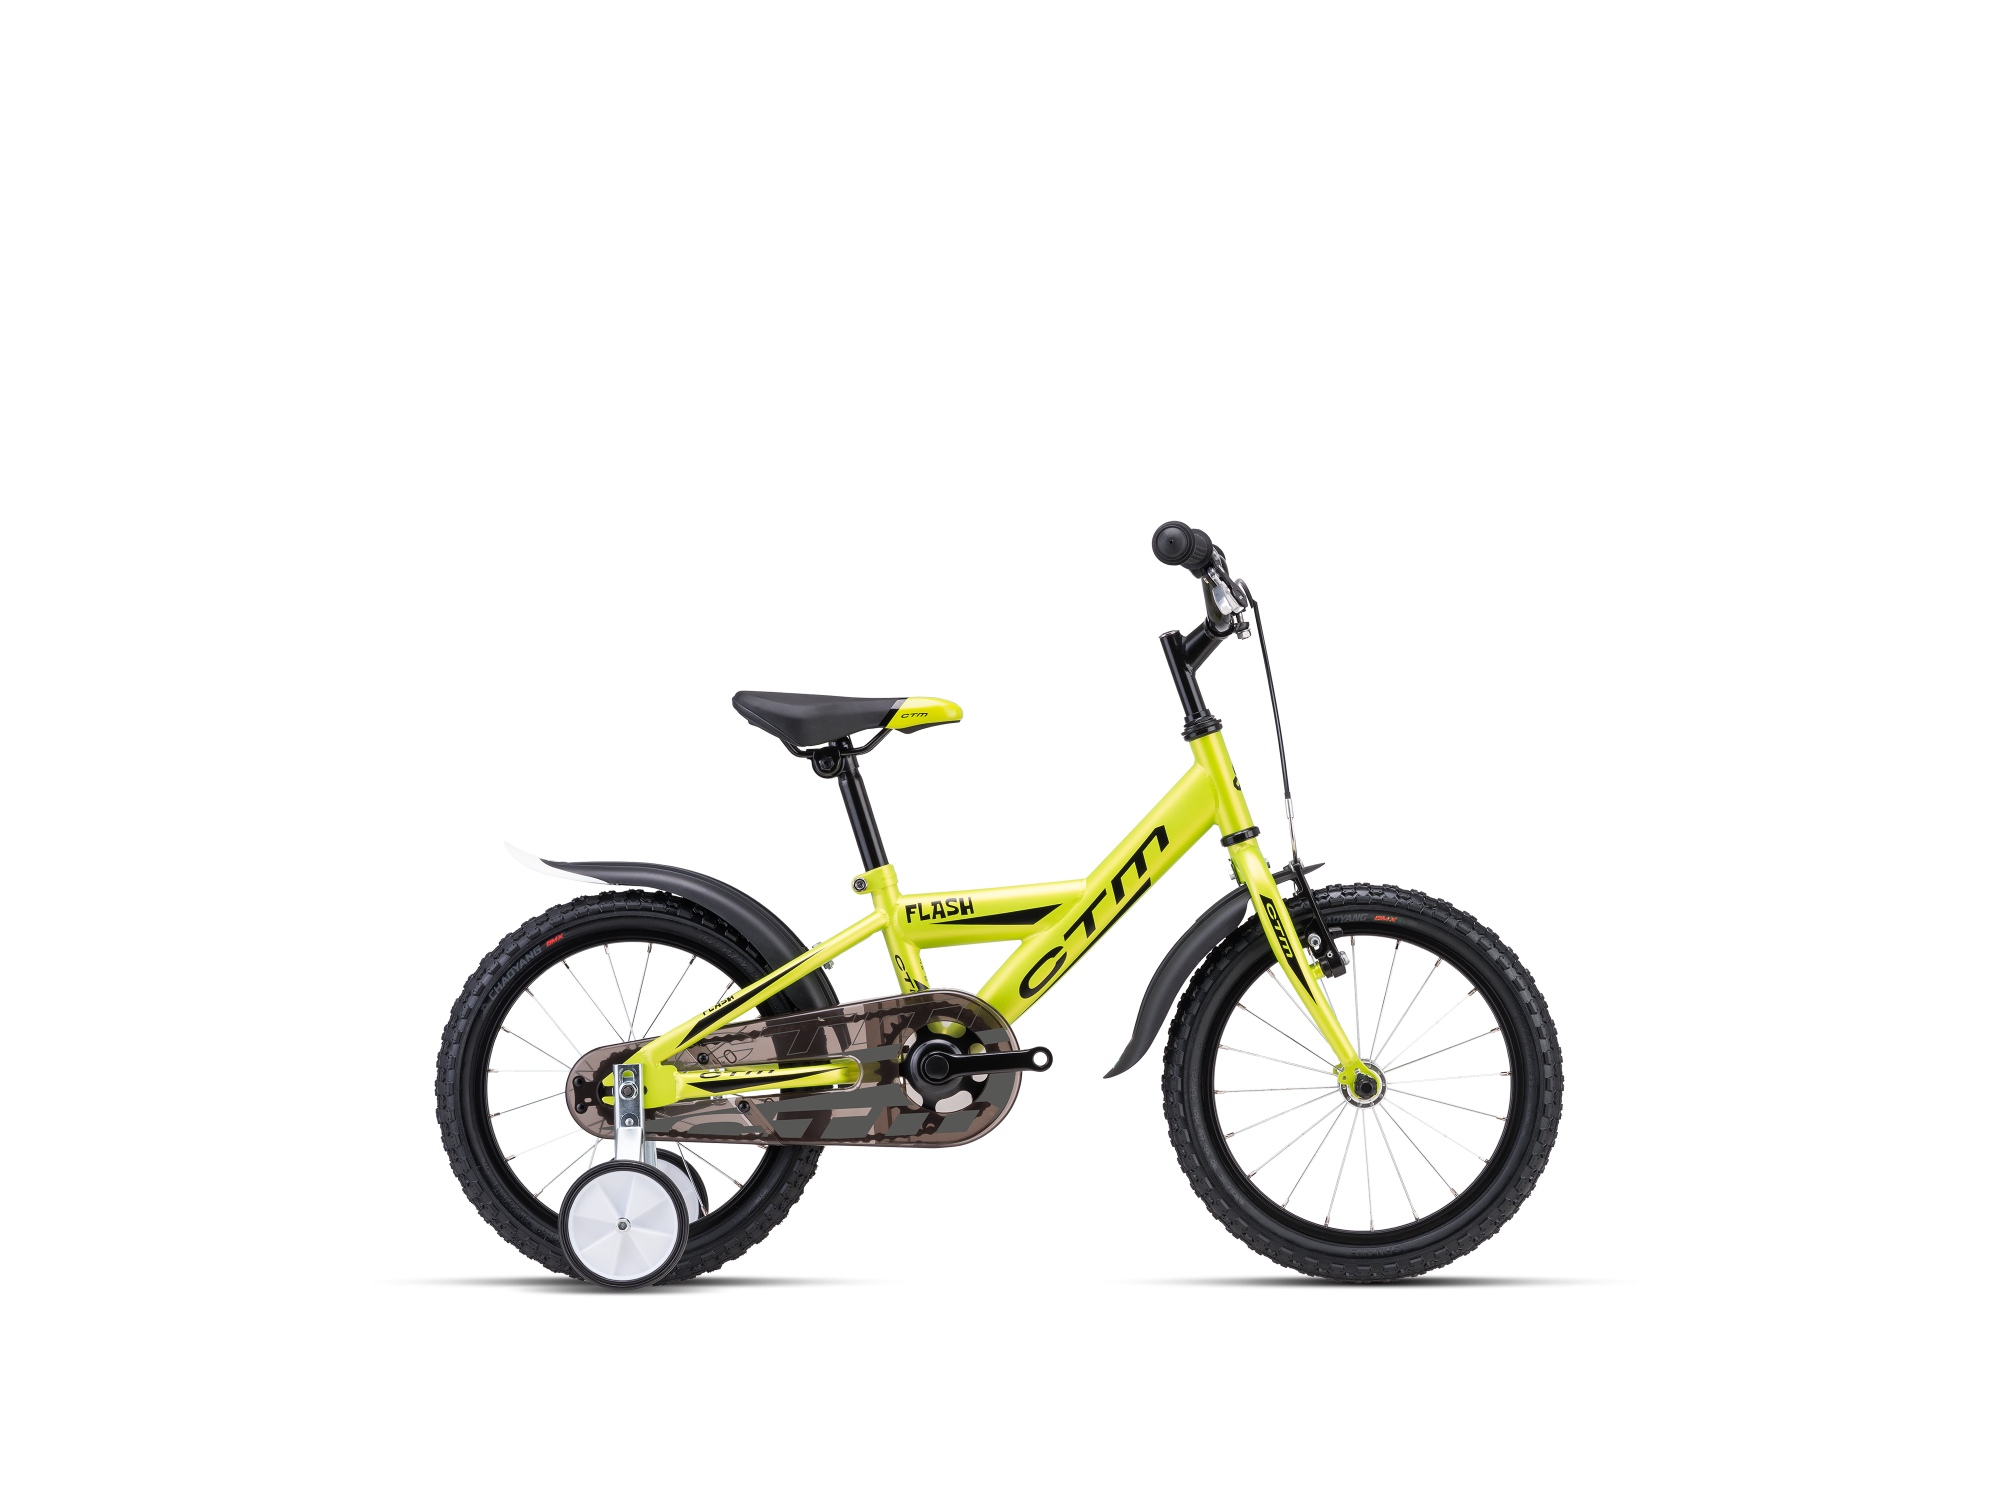 Dječji bicikl CTM Flash žute boje sa pomoćnim kotačima